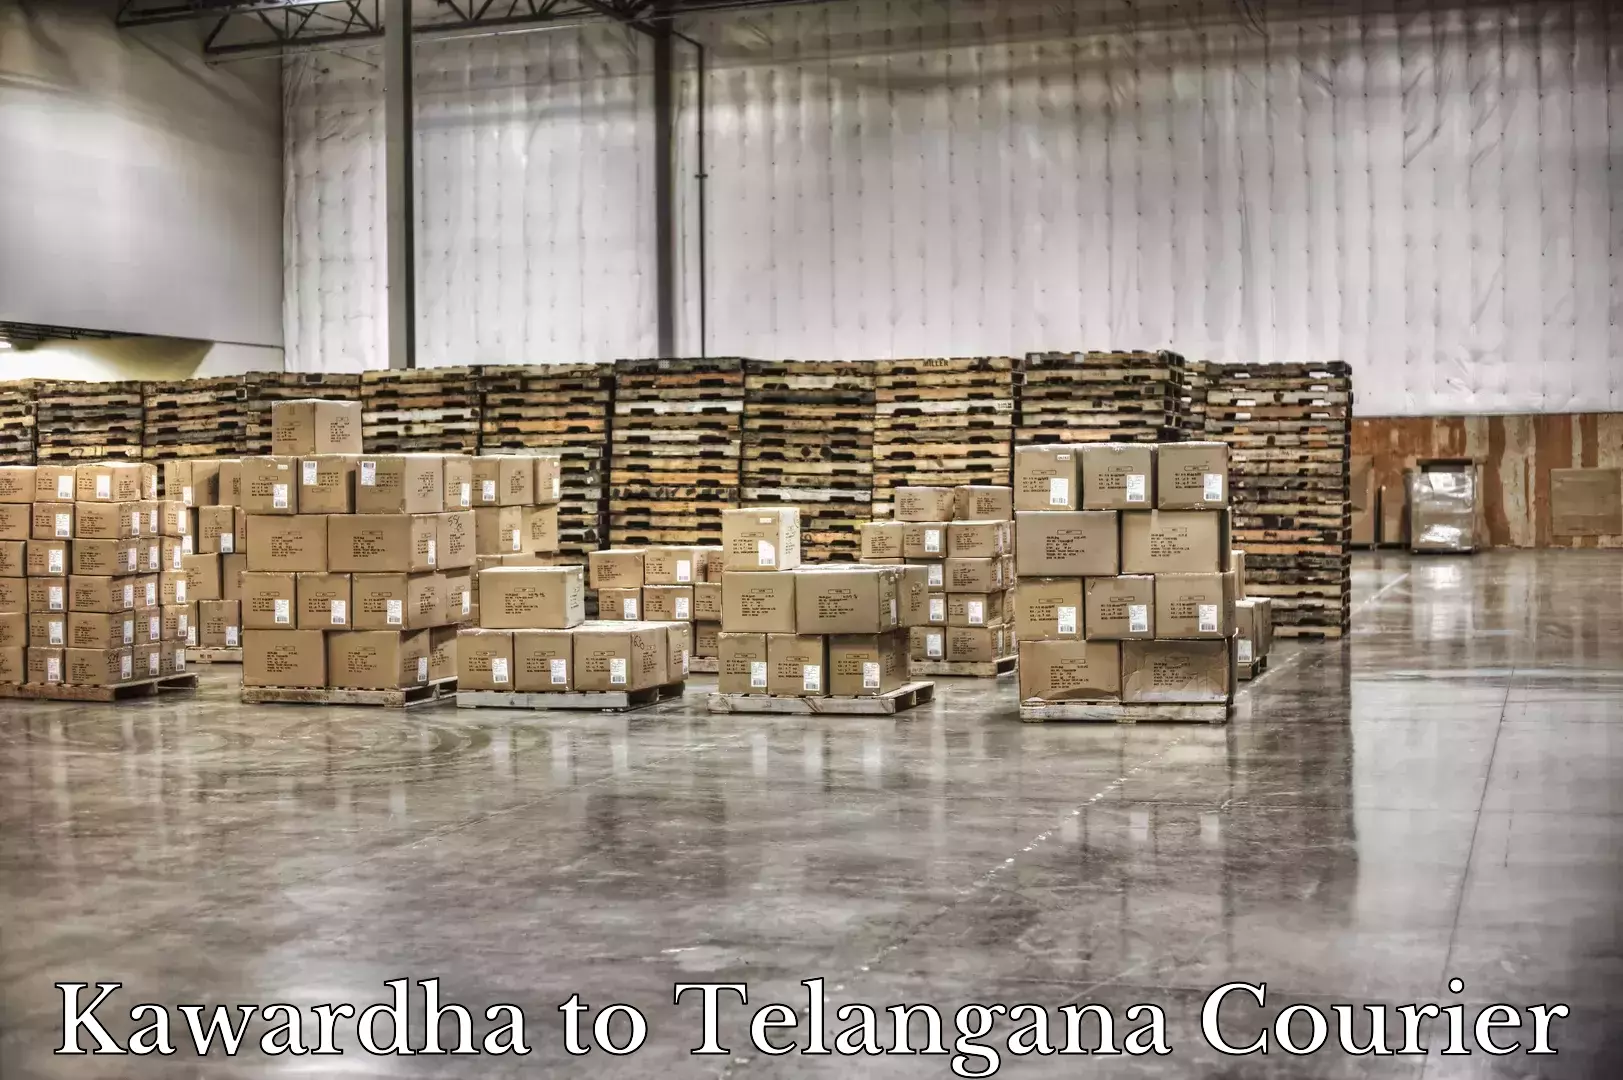 Luggage shipment specialists Kawardha to Madnoor